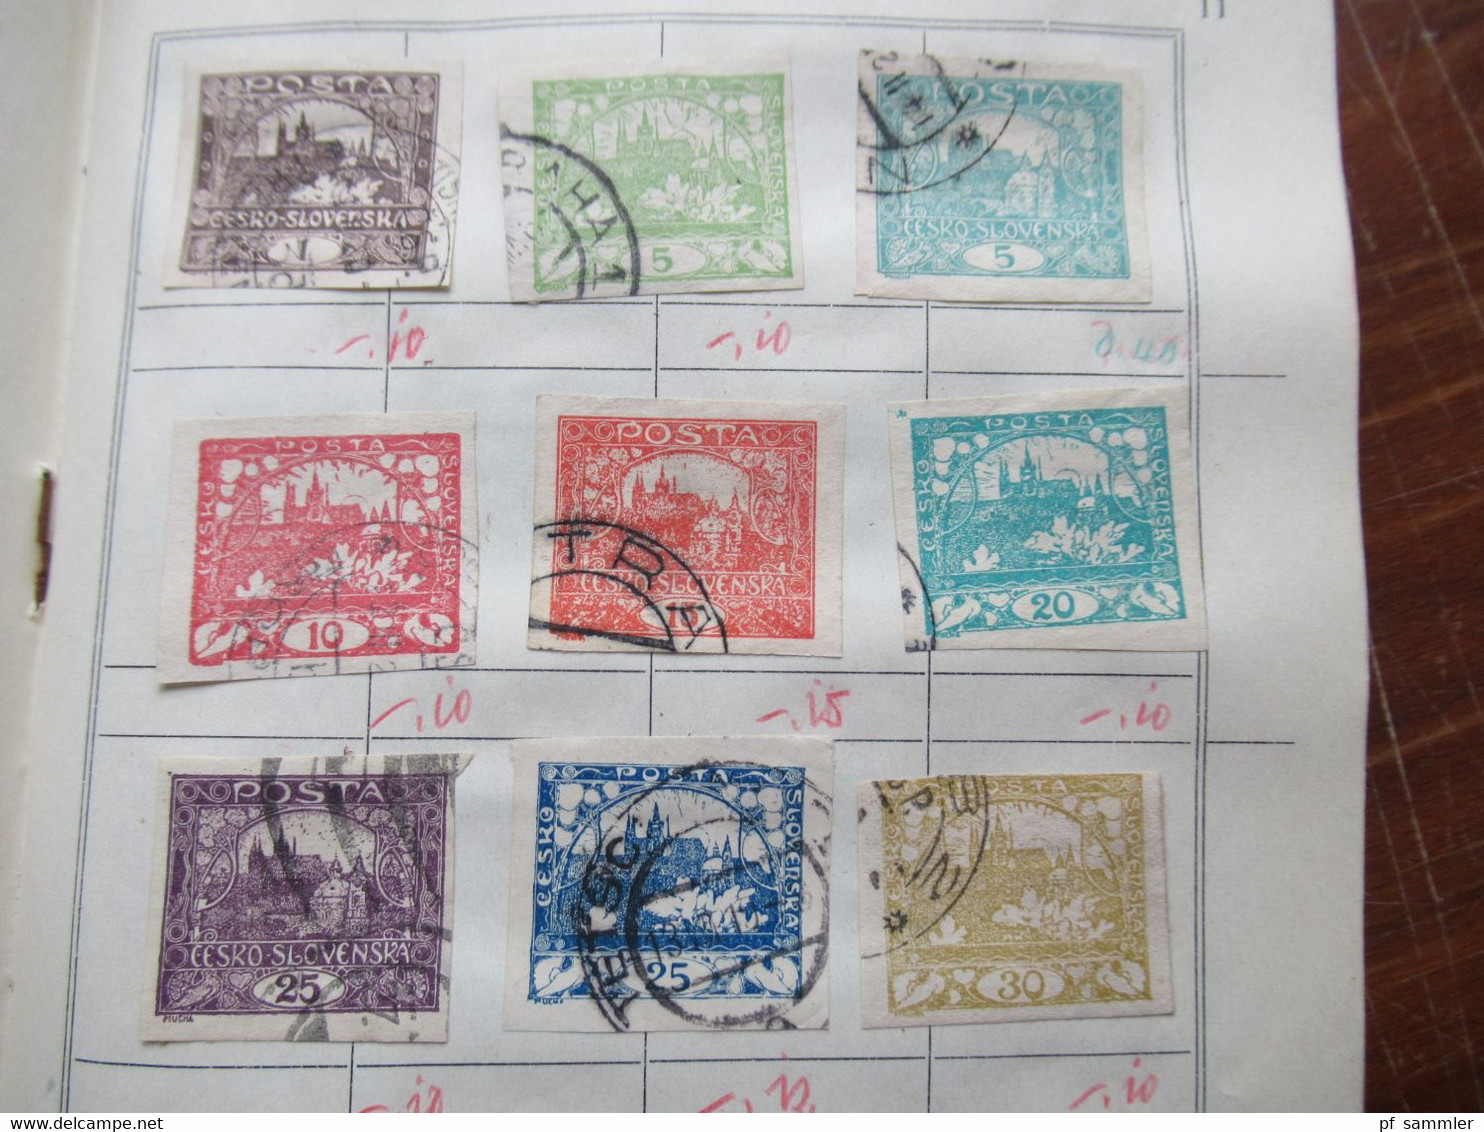 Briefmarken altes Tauschheft / Tauschsendung mit einigen gestempelten Marken / 1x Frankreich Sage mit Perfin